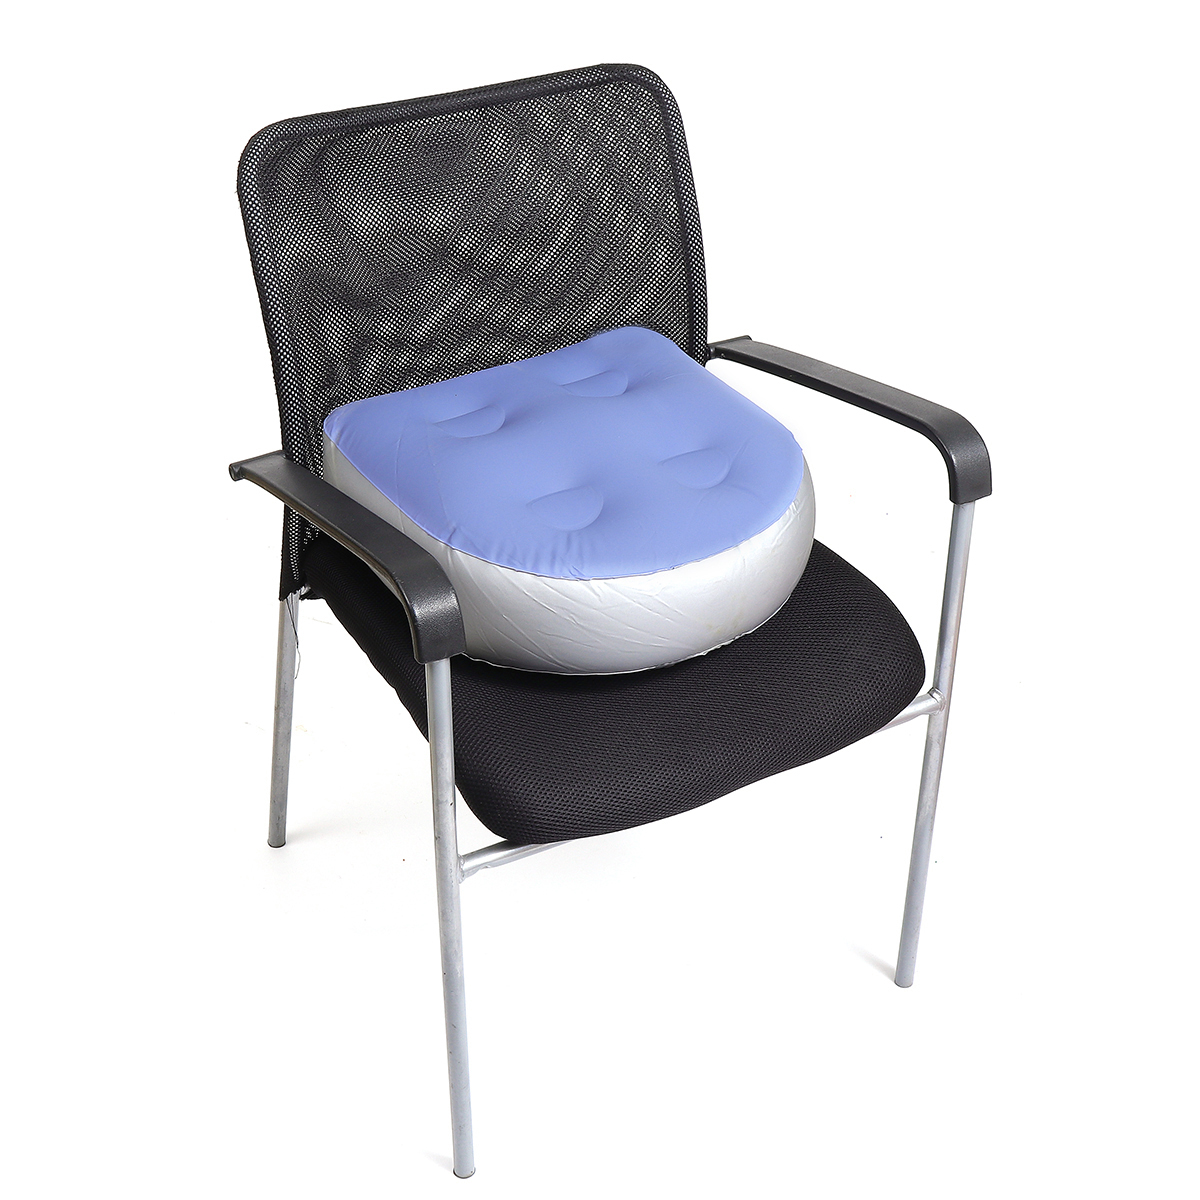 

PVC Booster Seat Hot tub Spa Spas Cushion